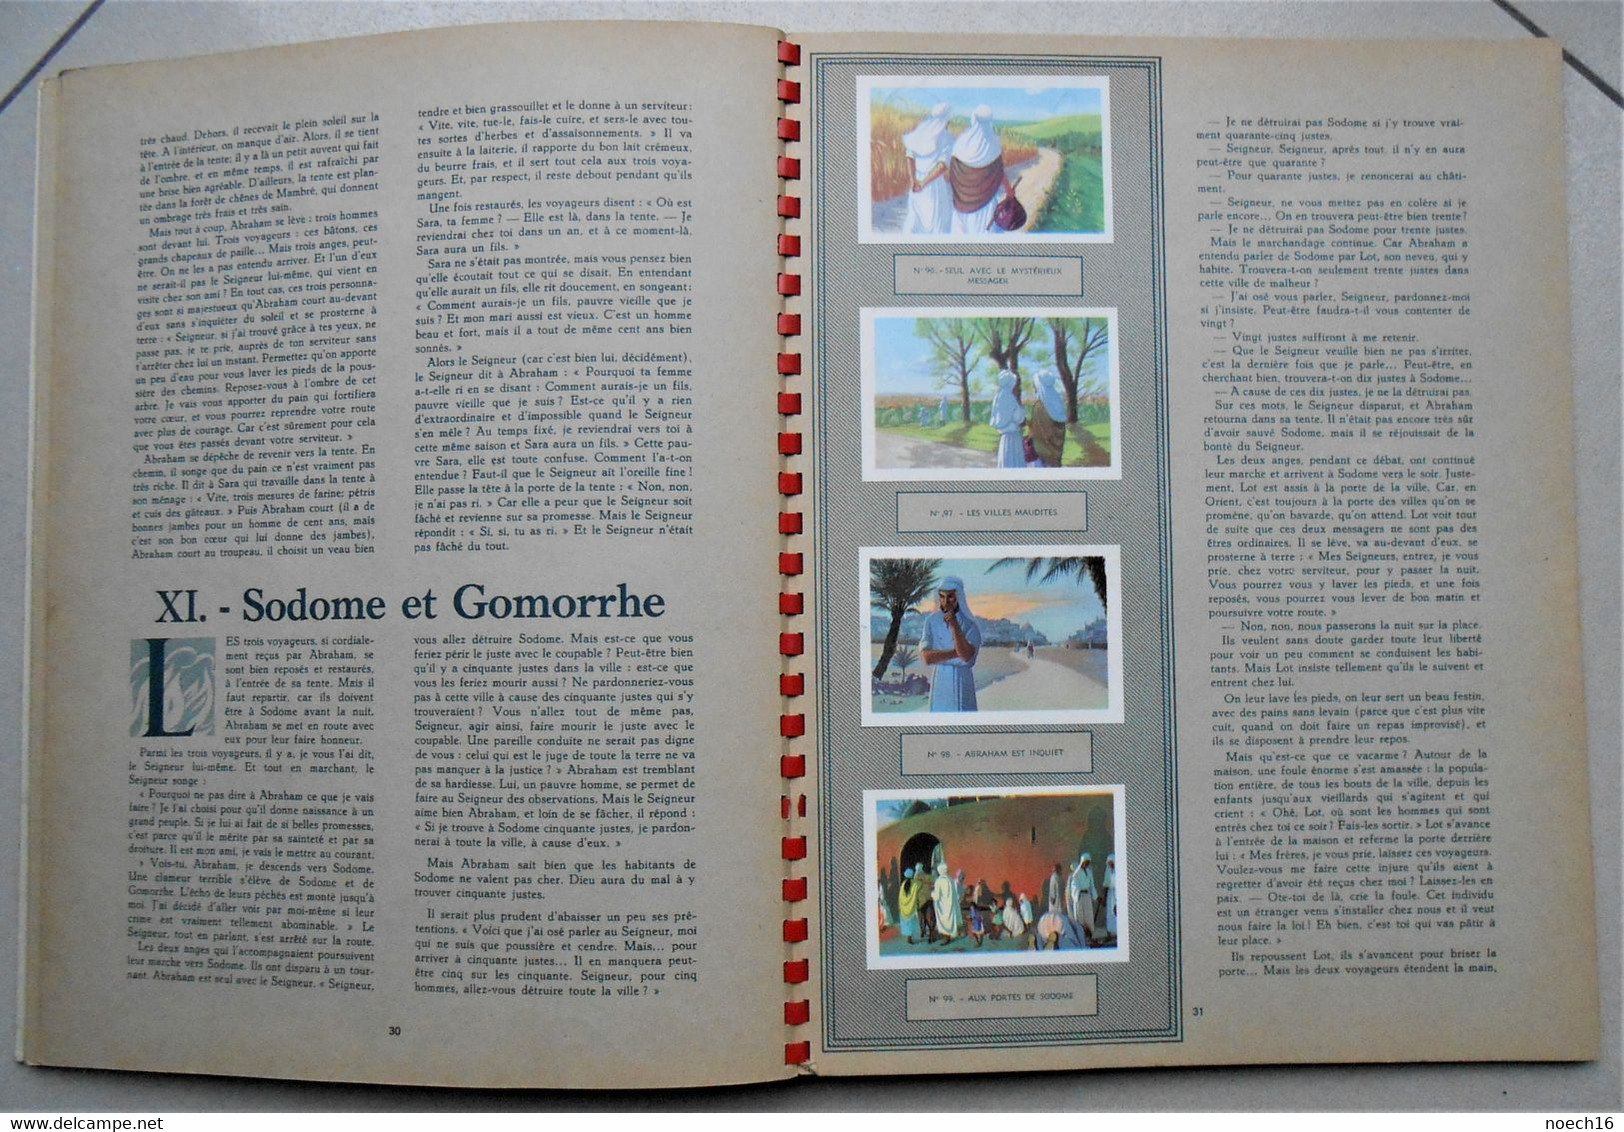 Album Chromos Complet, La Plus Belle Histoire Des Temps Vol 1 - Chocolat Suchard - Sammelbilderalben & Katalogue